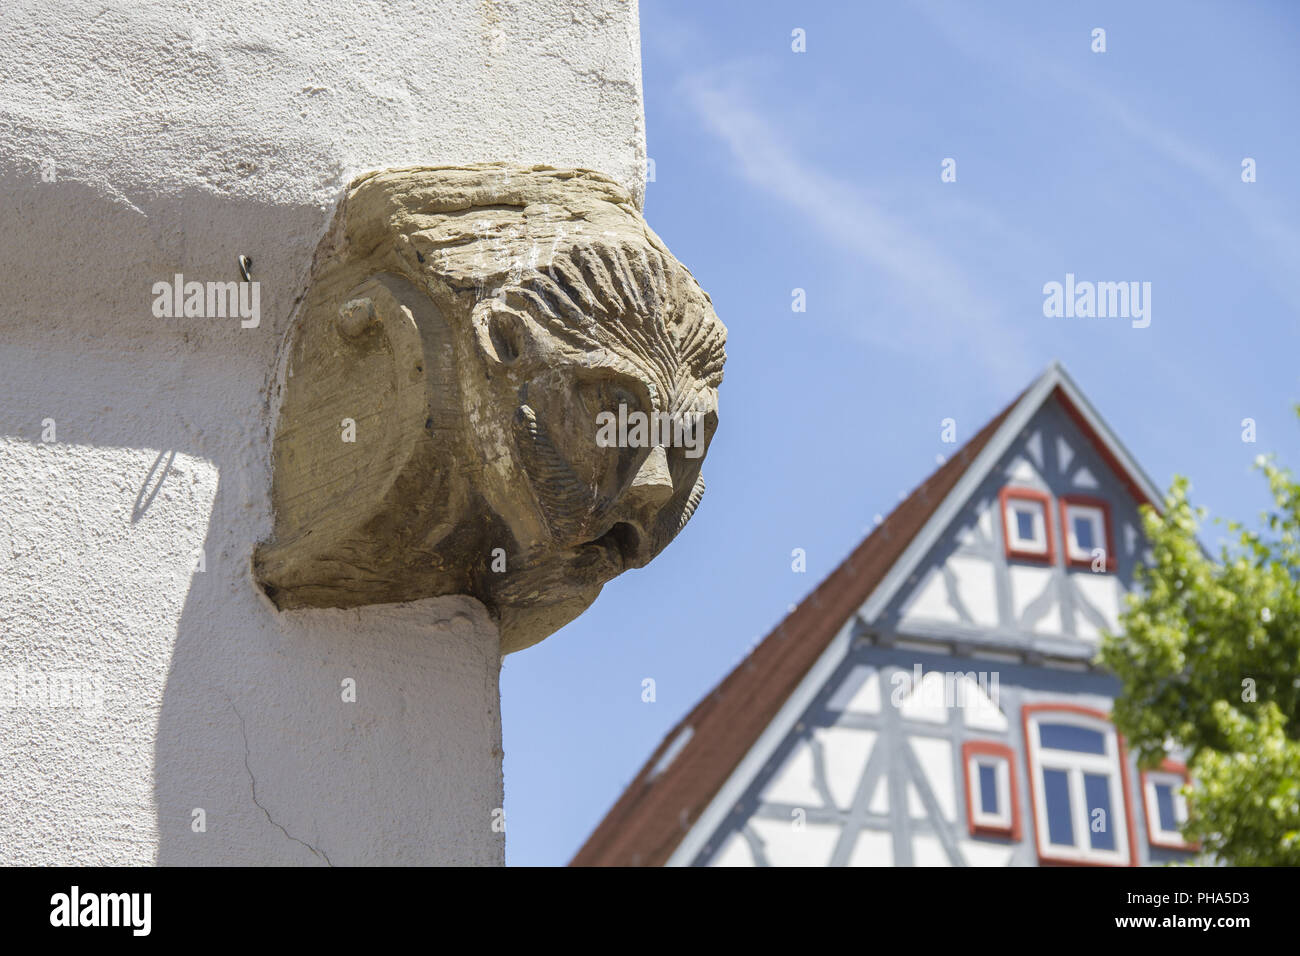 La figure grotesque dans la vieille-ville de Waiblingen, Allemagne Banque D'Images